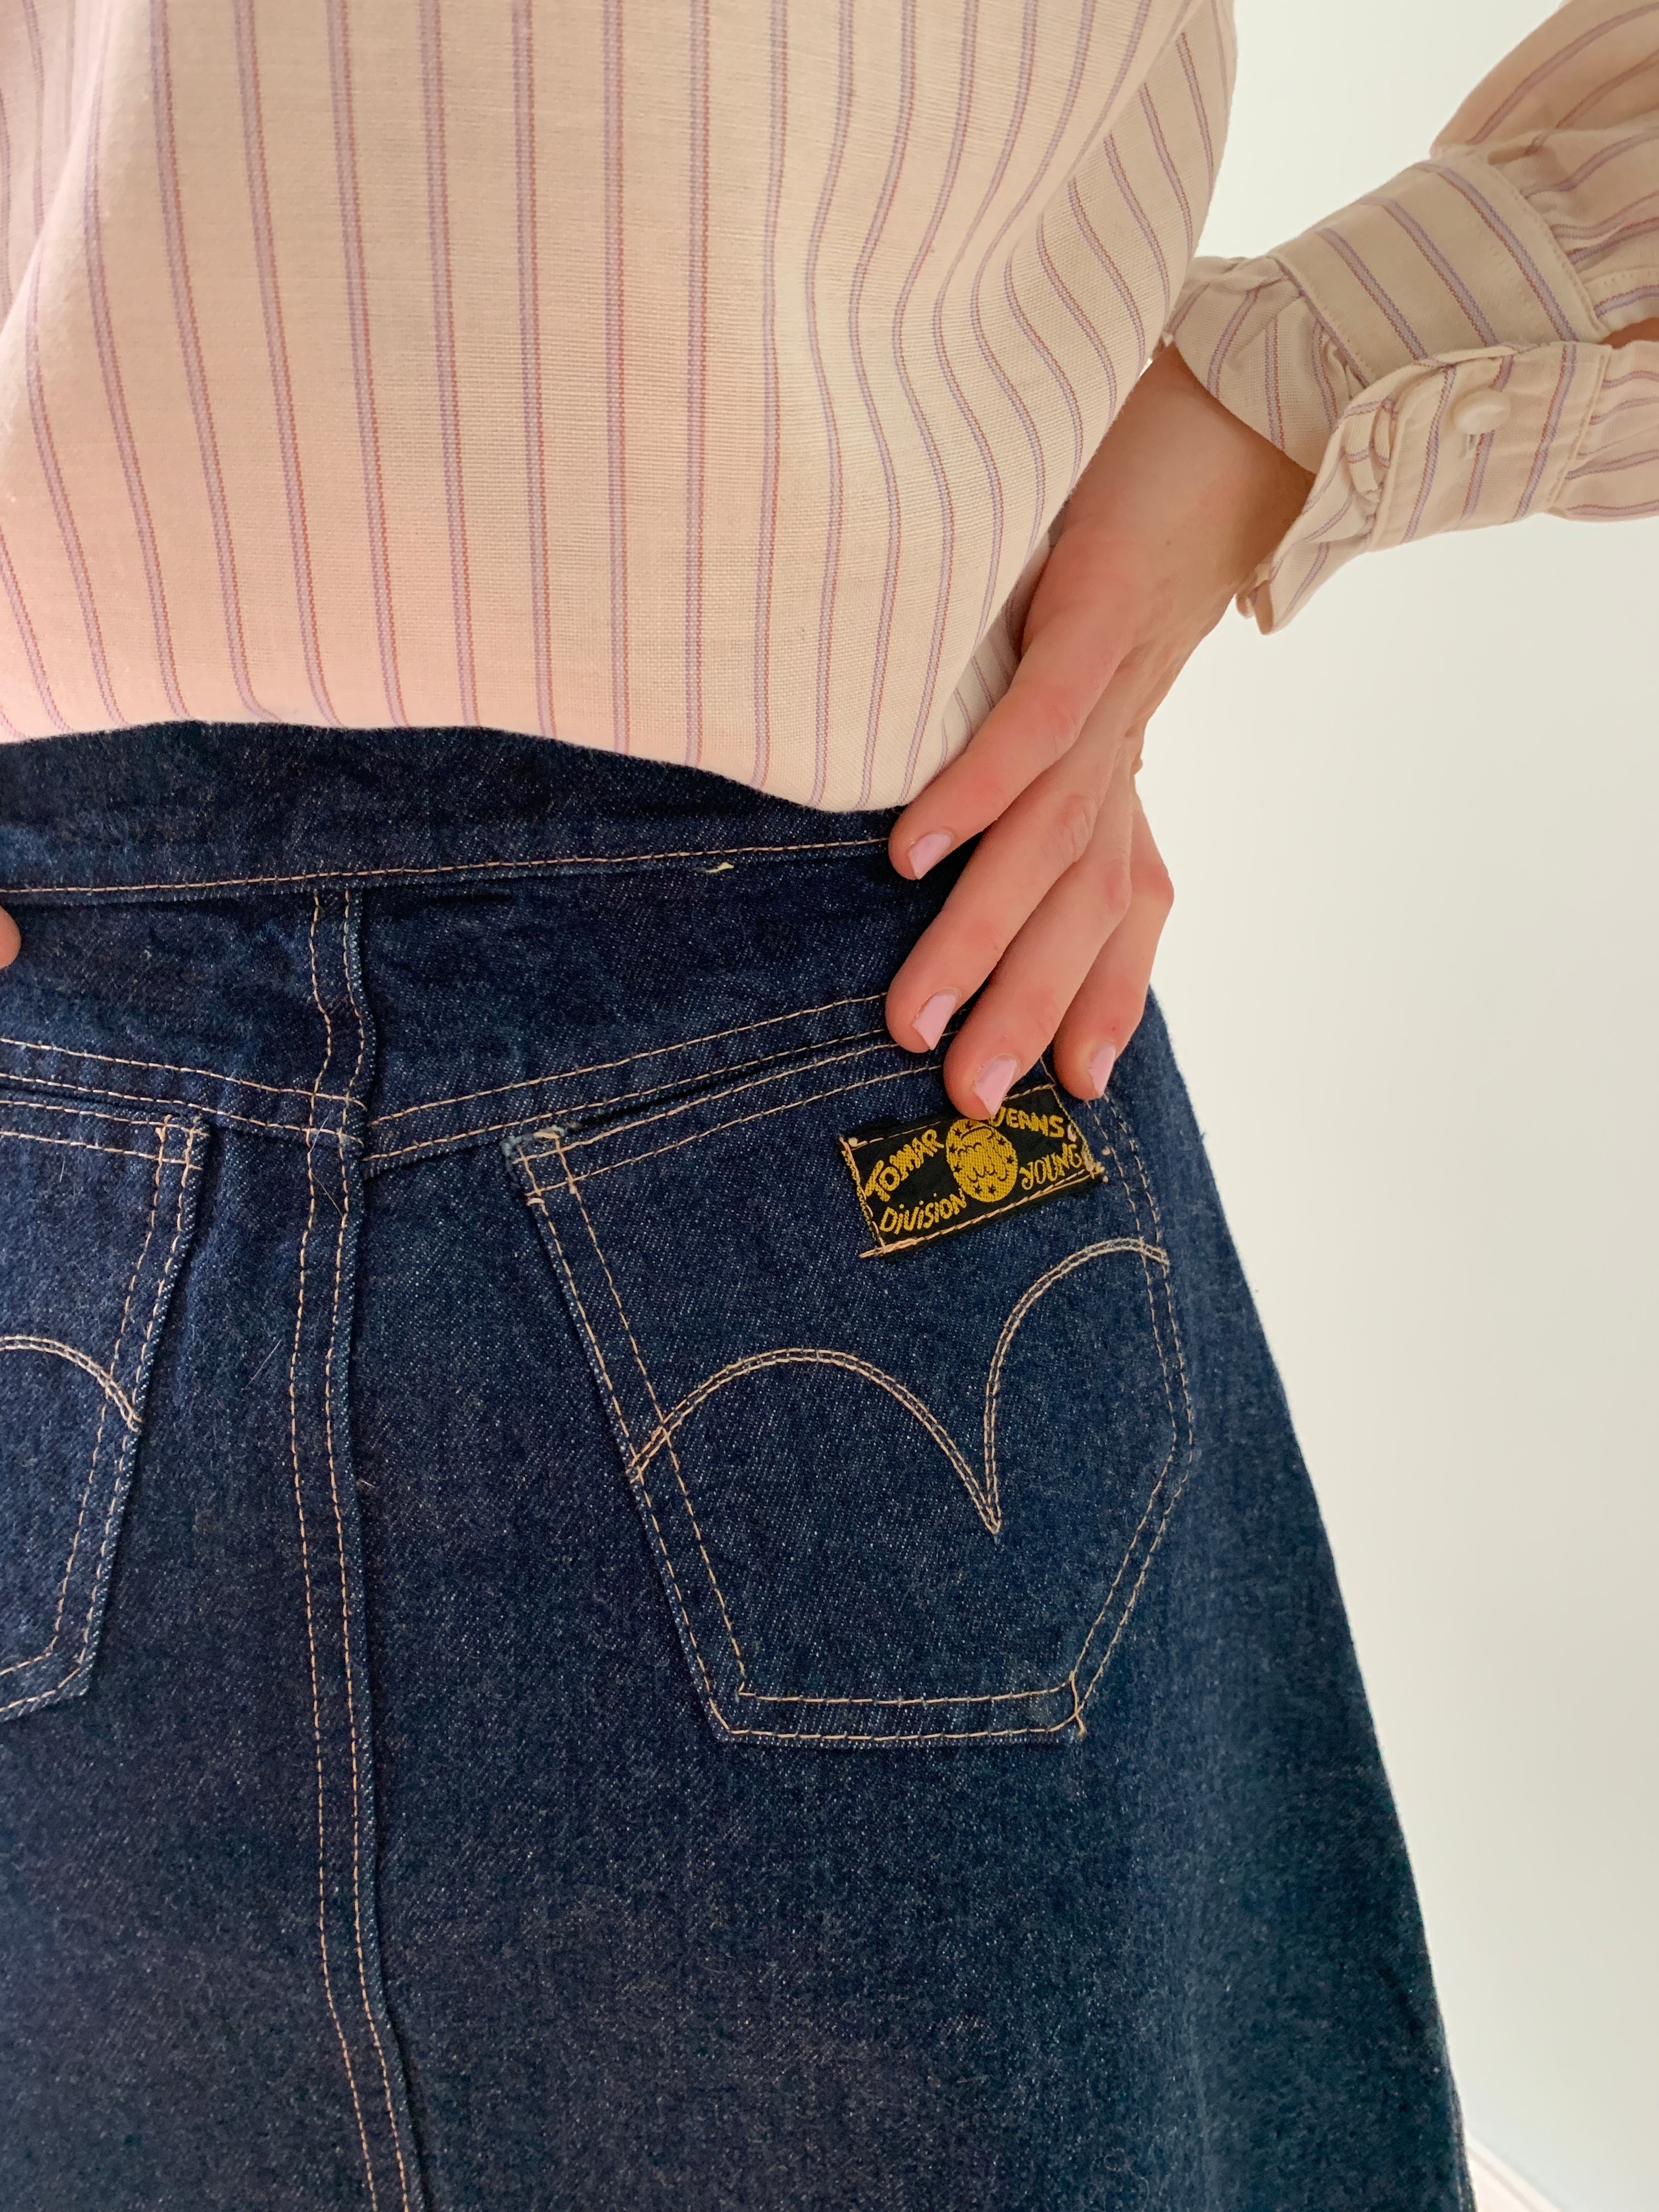 Vintage denim button through skirt